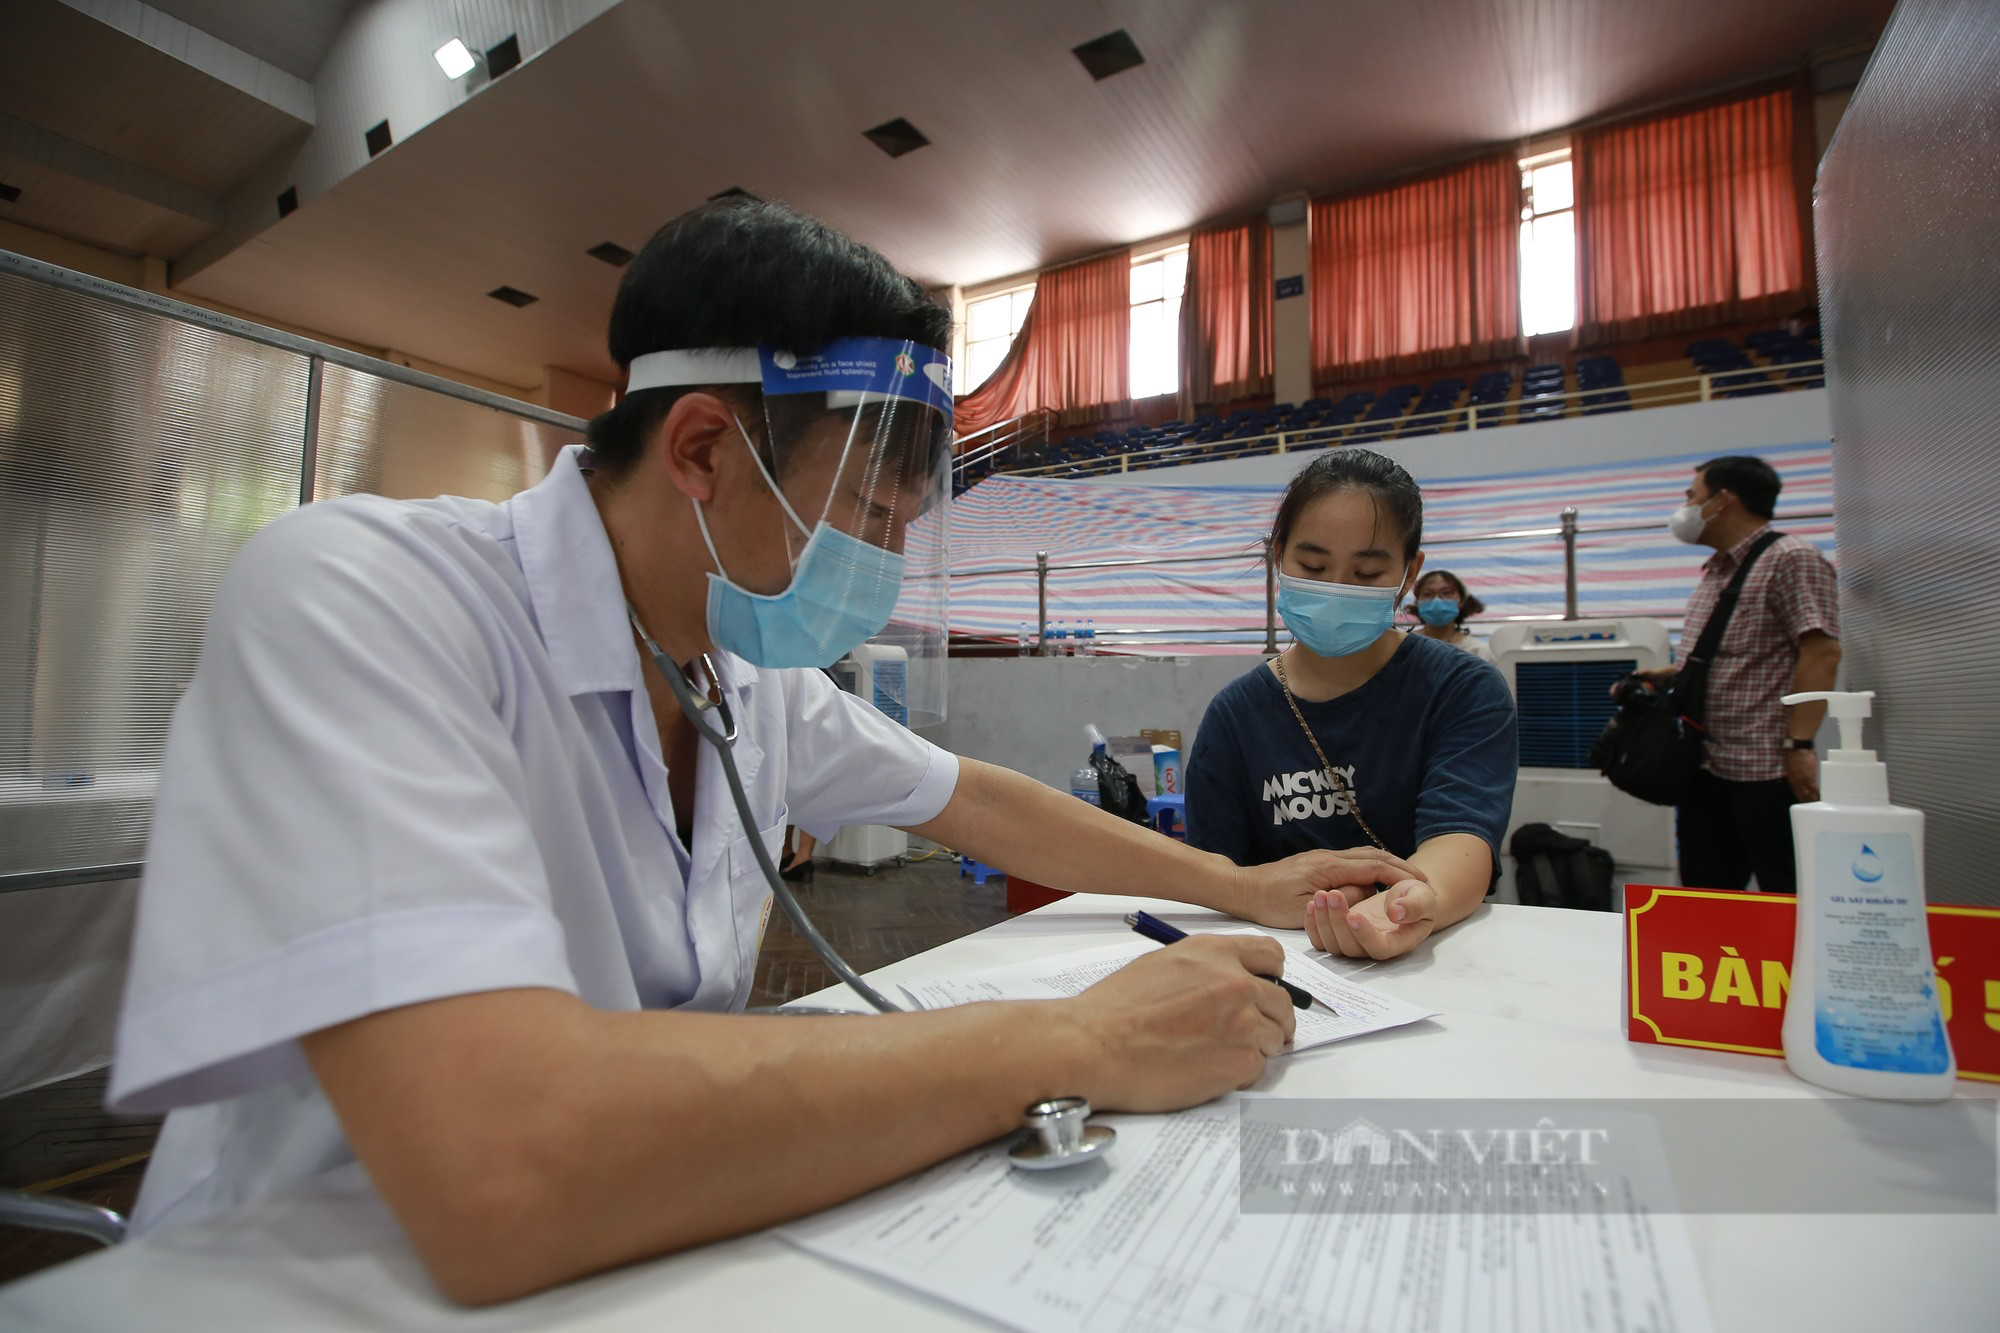 Hà Nội: Nữ bác sĩ về hưu xung phong tham gia vào cuộc chạy đua tiêm vaccine chống dịch Covid-19 - Ảnh 3.